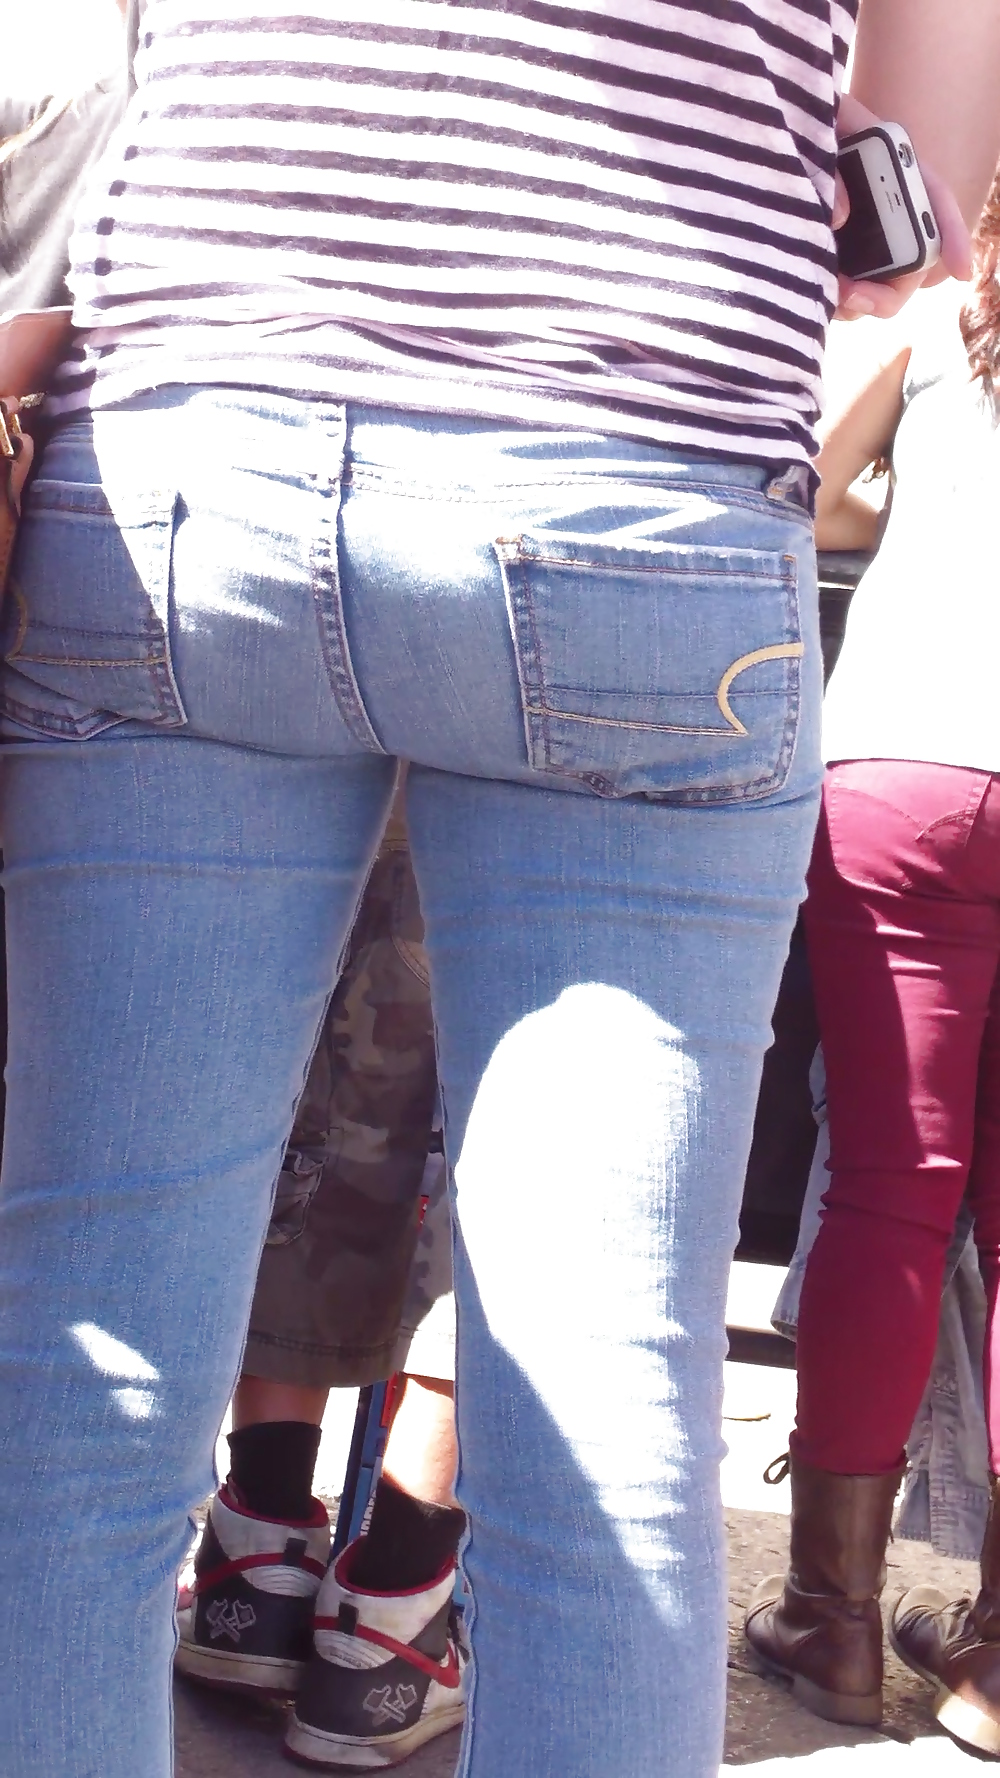 Teen ass & close up butt in jeans #19969030